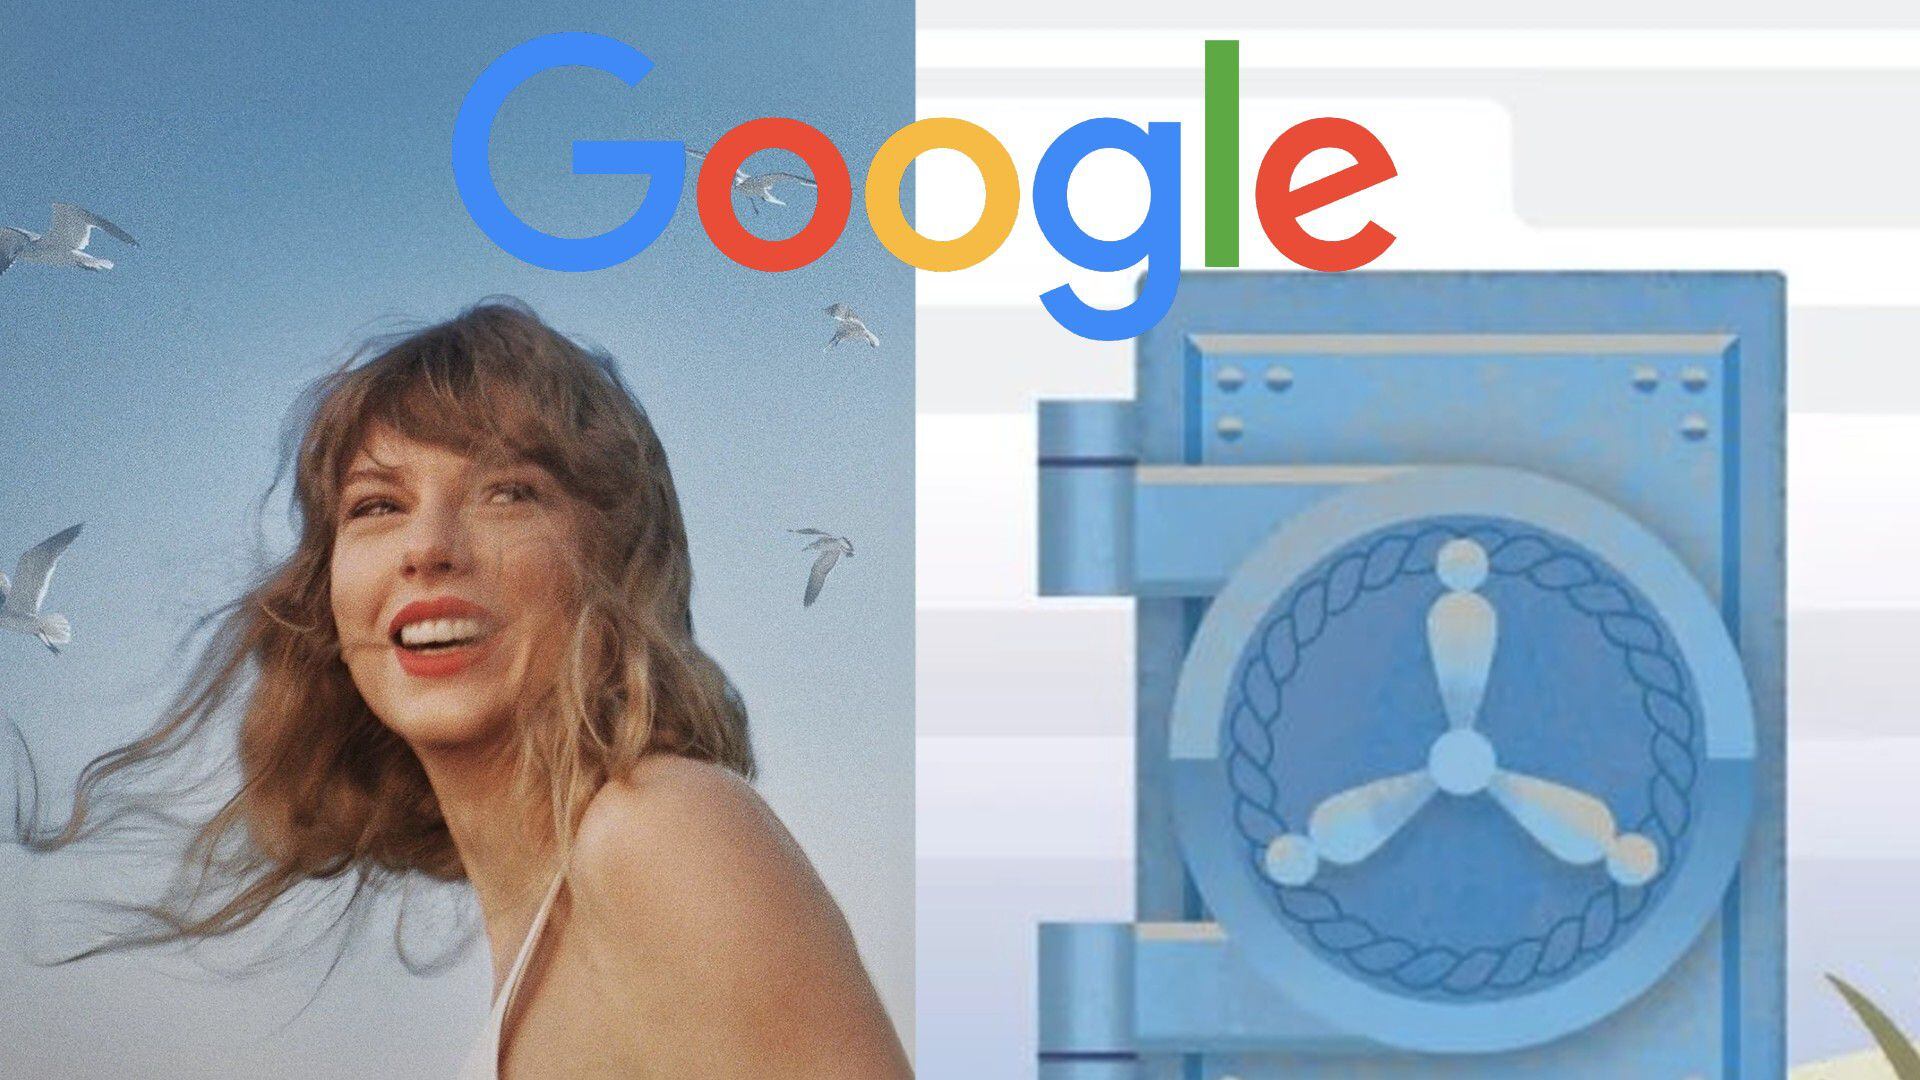 Taylor Swift anticipa las canciones de 1989 (Taylor’s Version) en Google México: cómo puedes adivinarlas